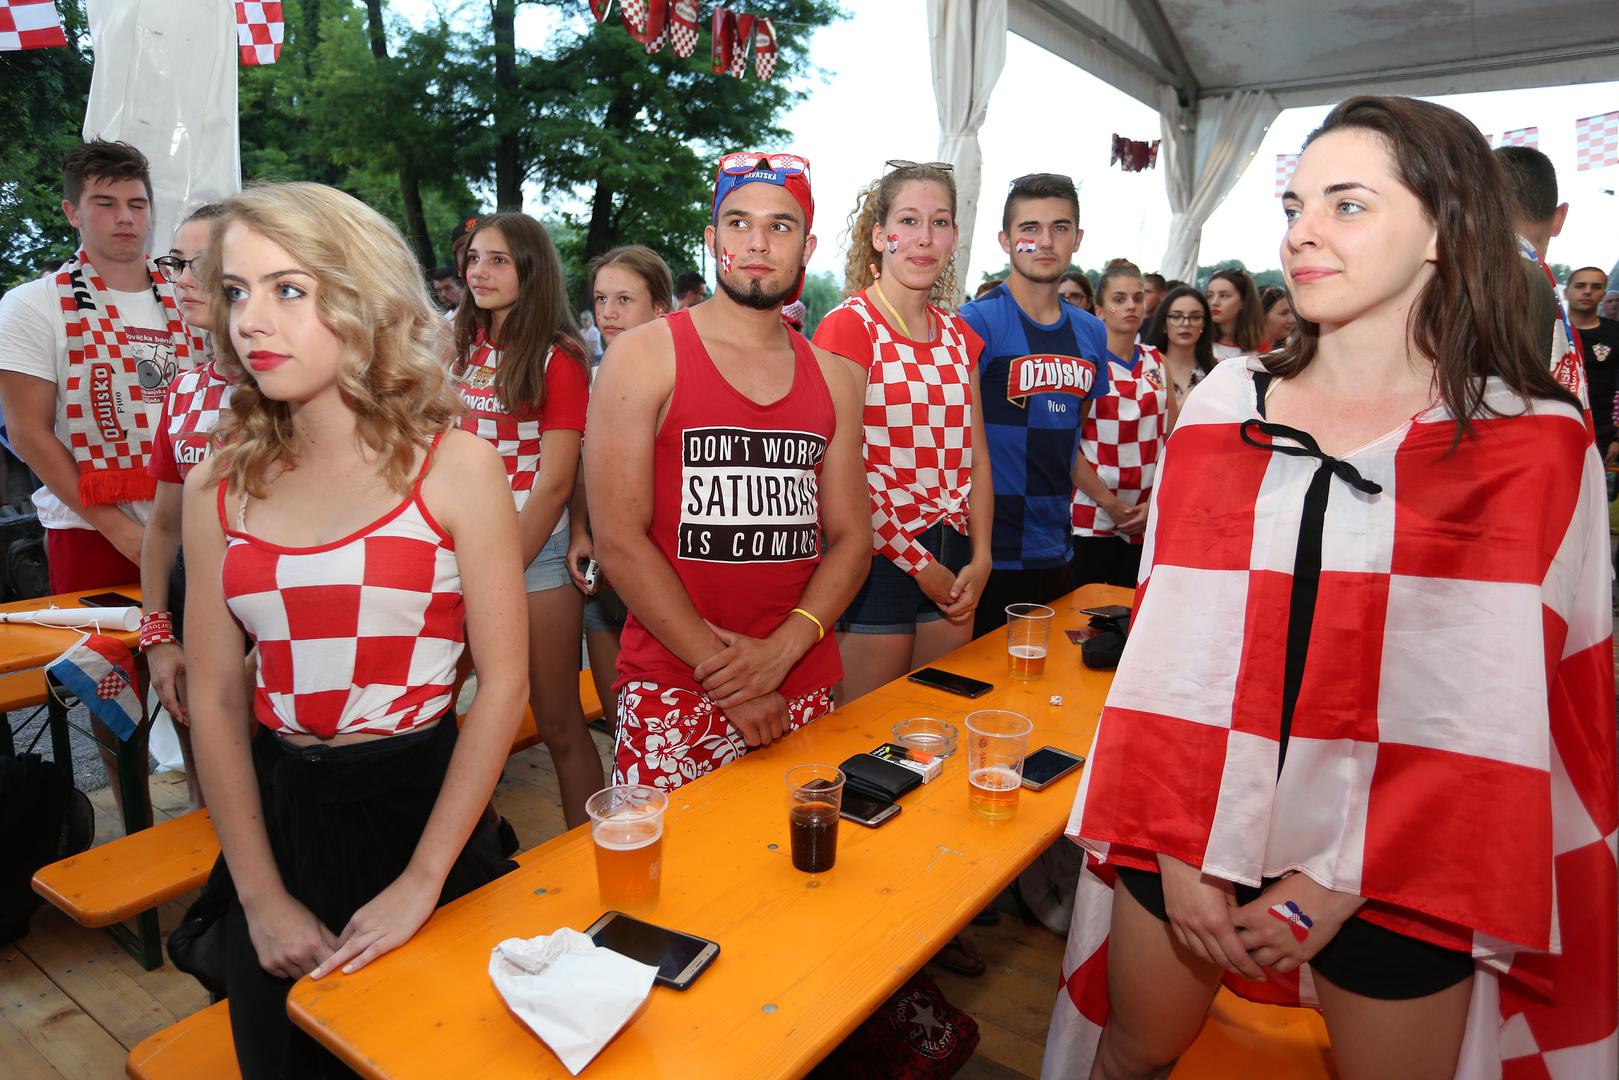 Lijepe Hrvatice opet su plijenile pozornost